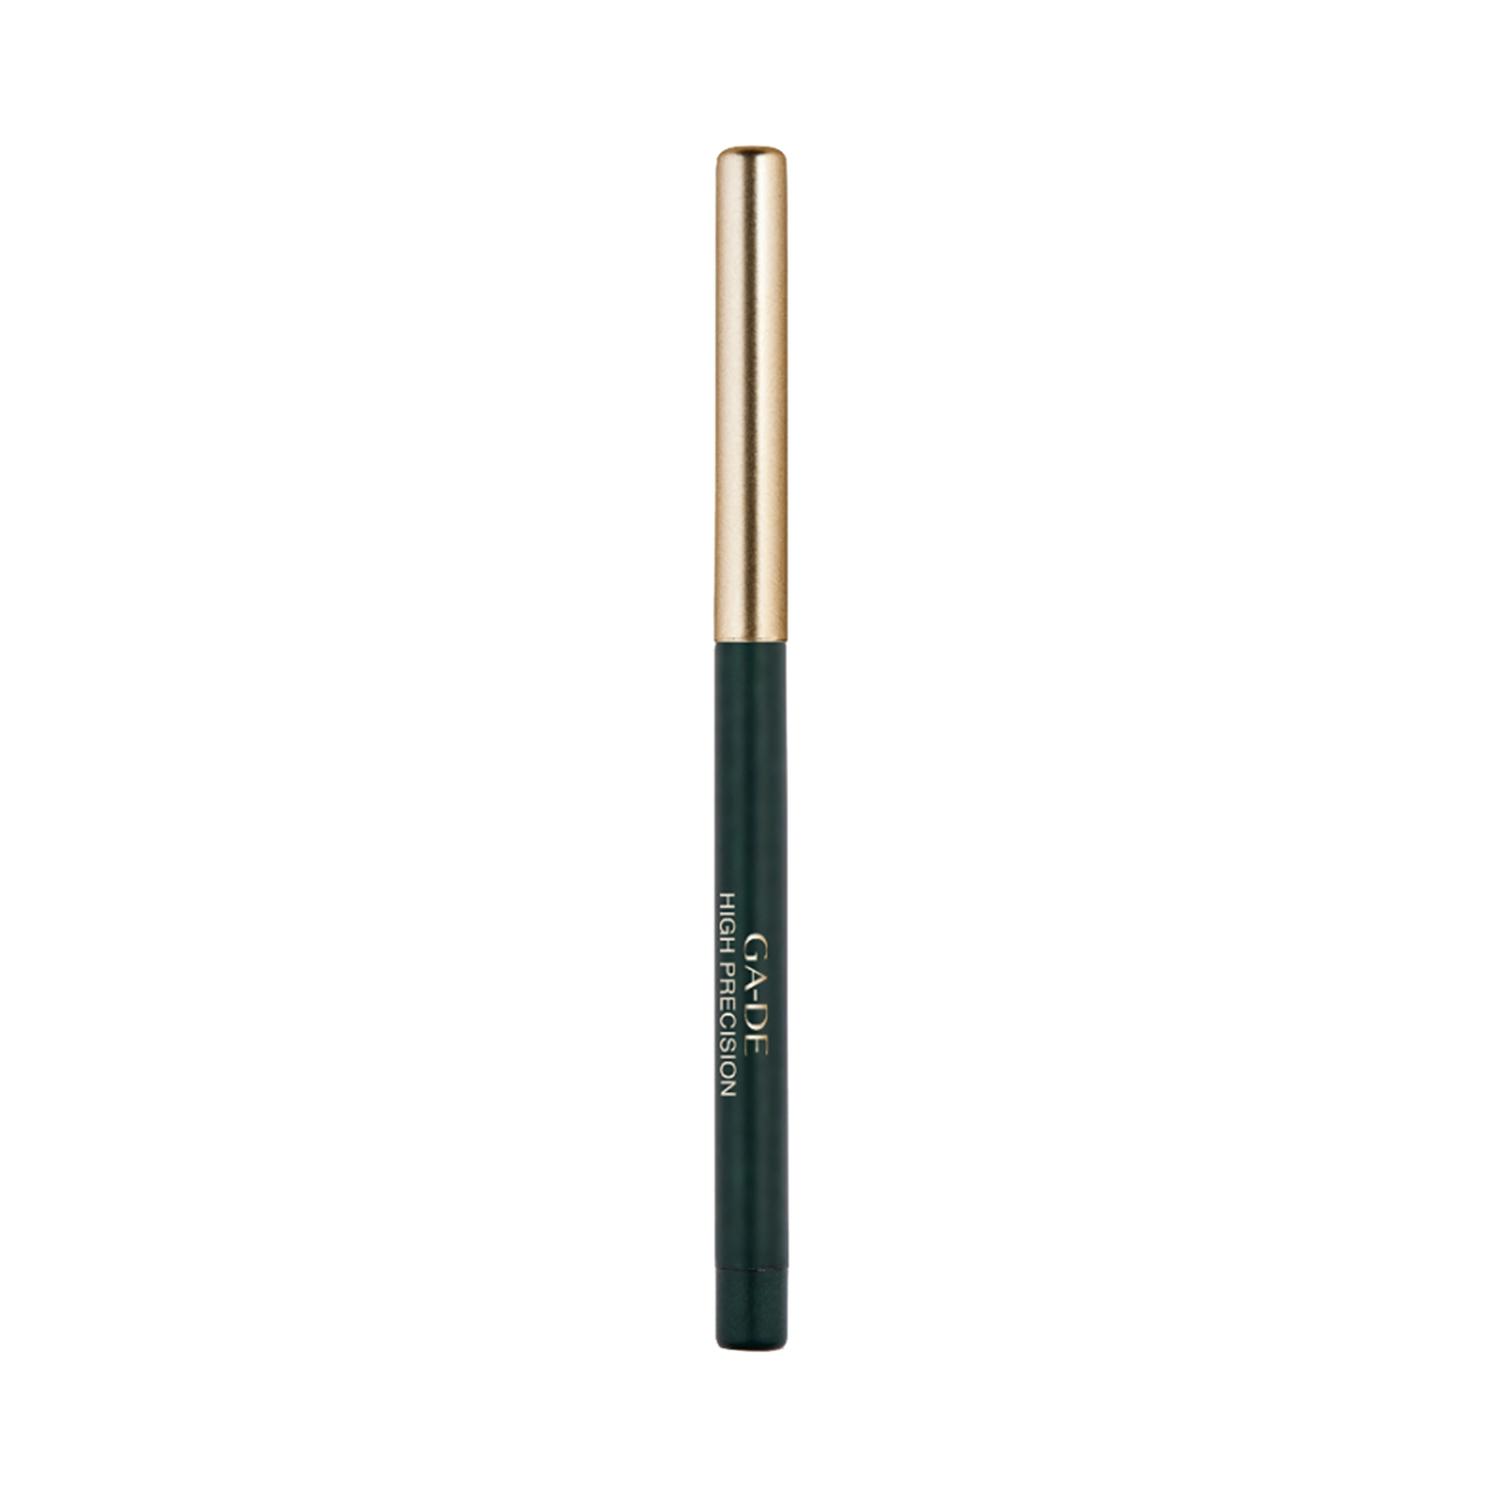 ga-de high precision eye pencil - 03 green (0.28g)